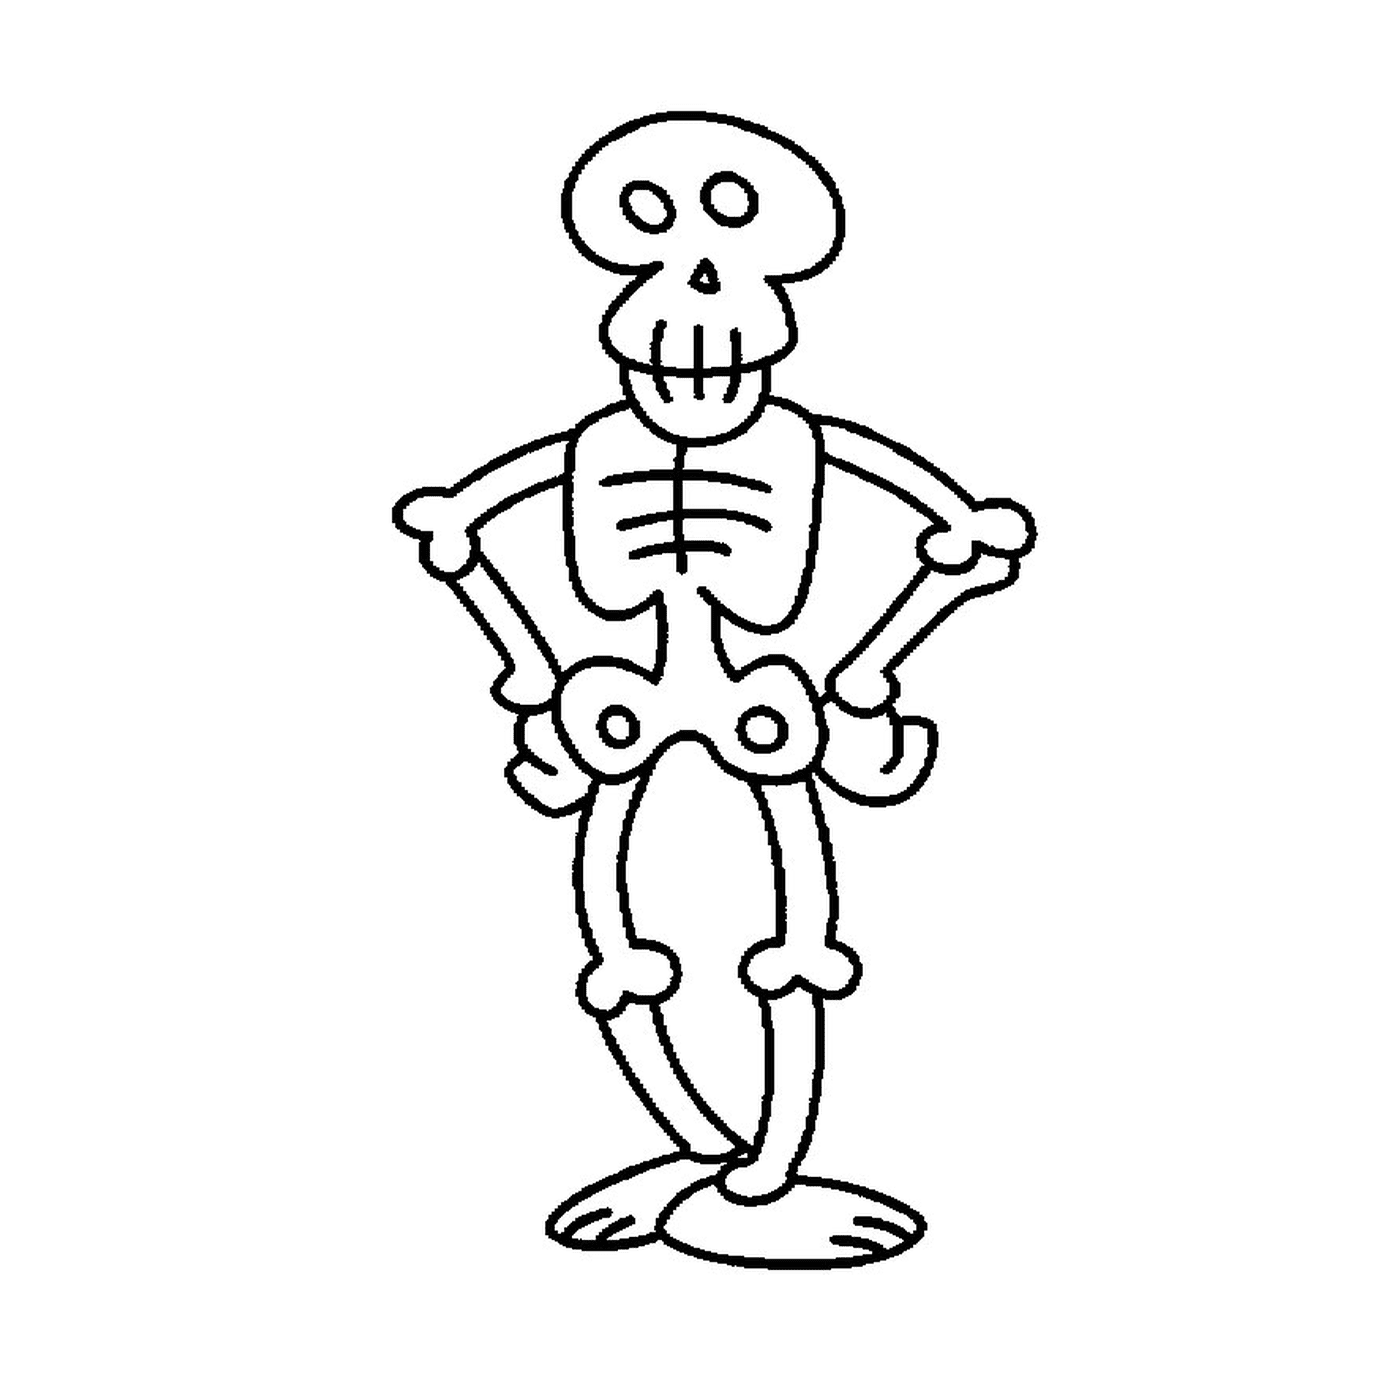   Squelette dessin animé amusant 